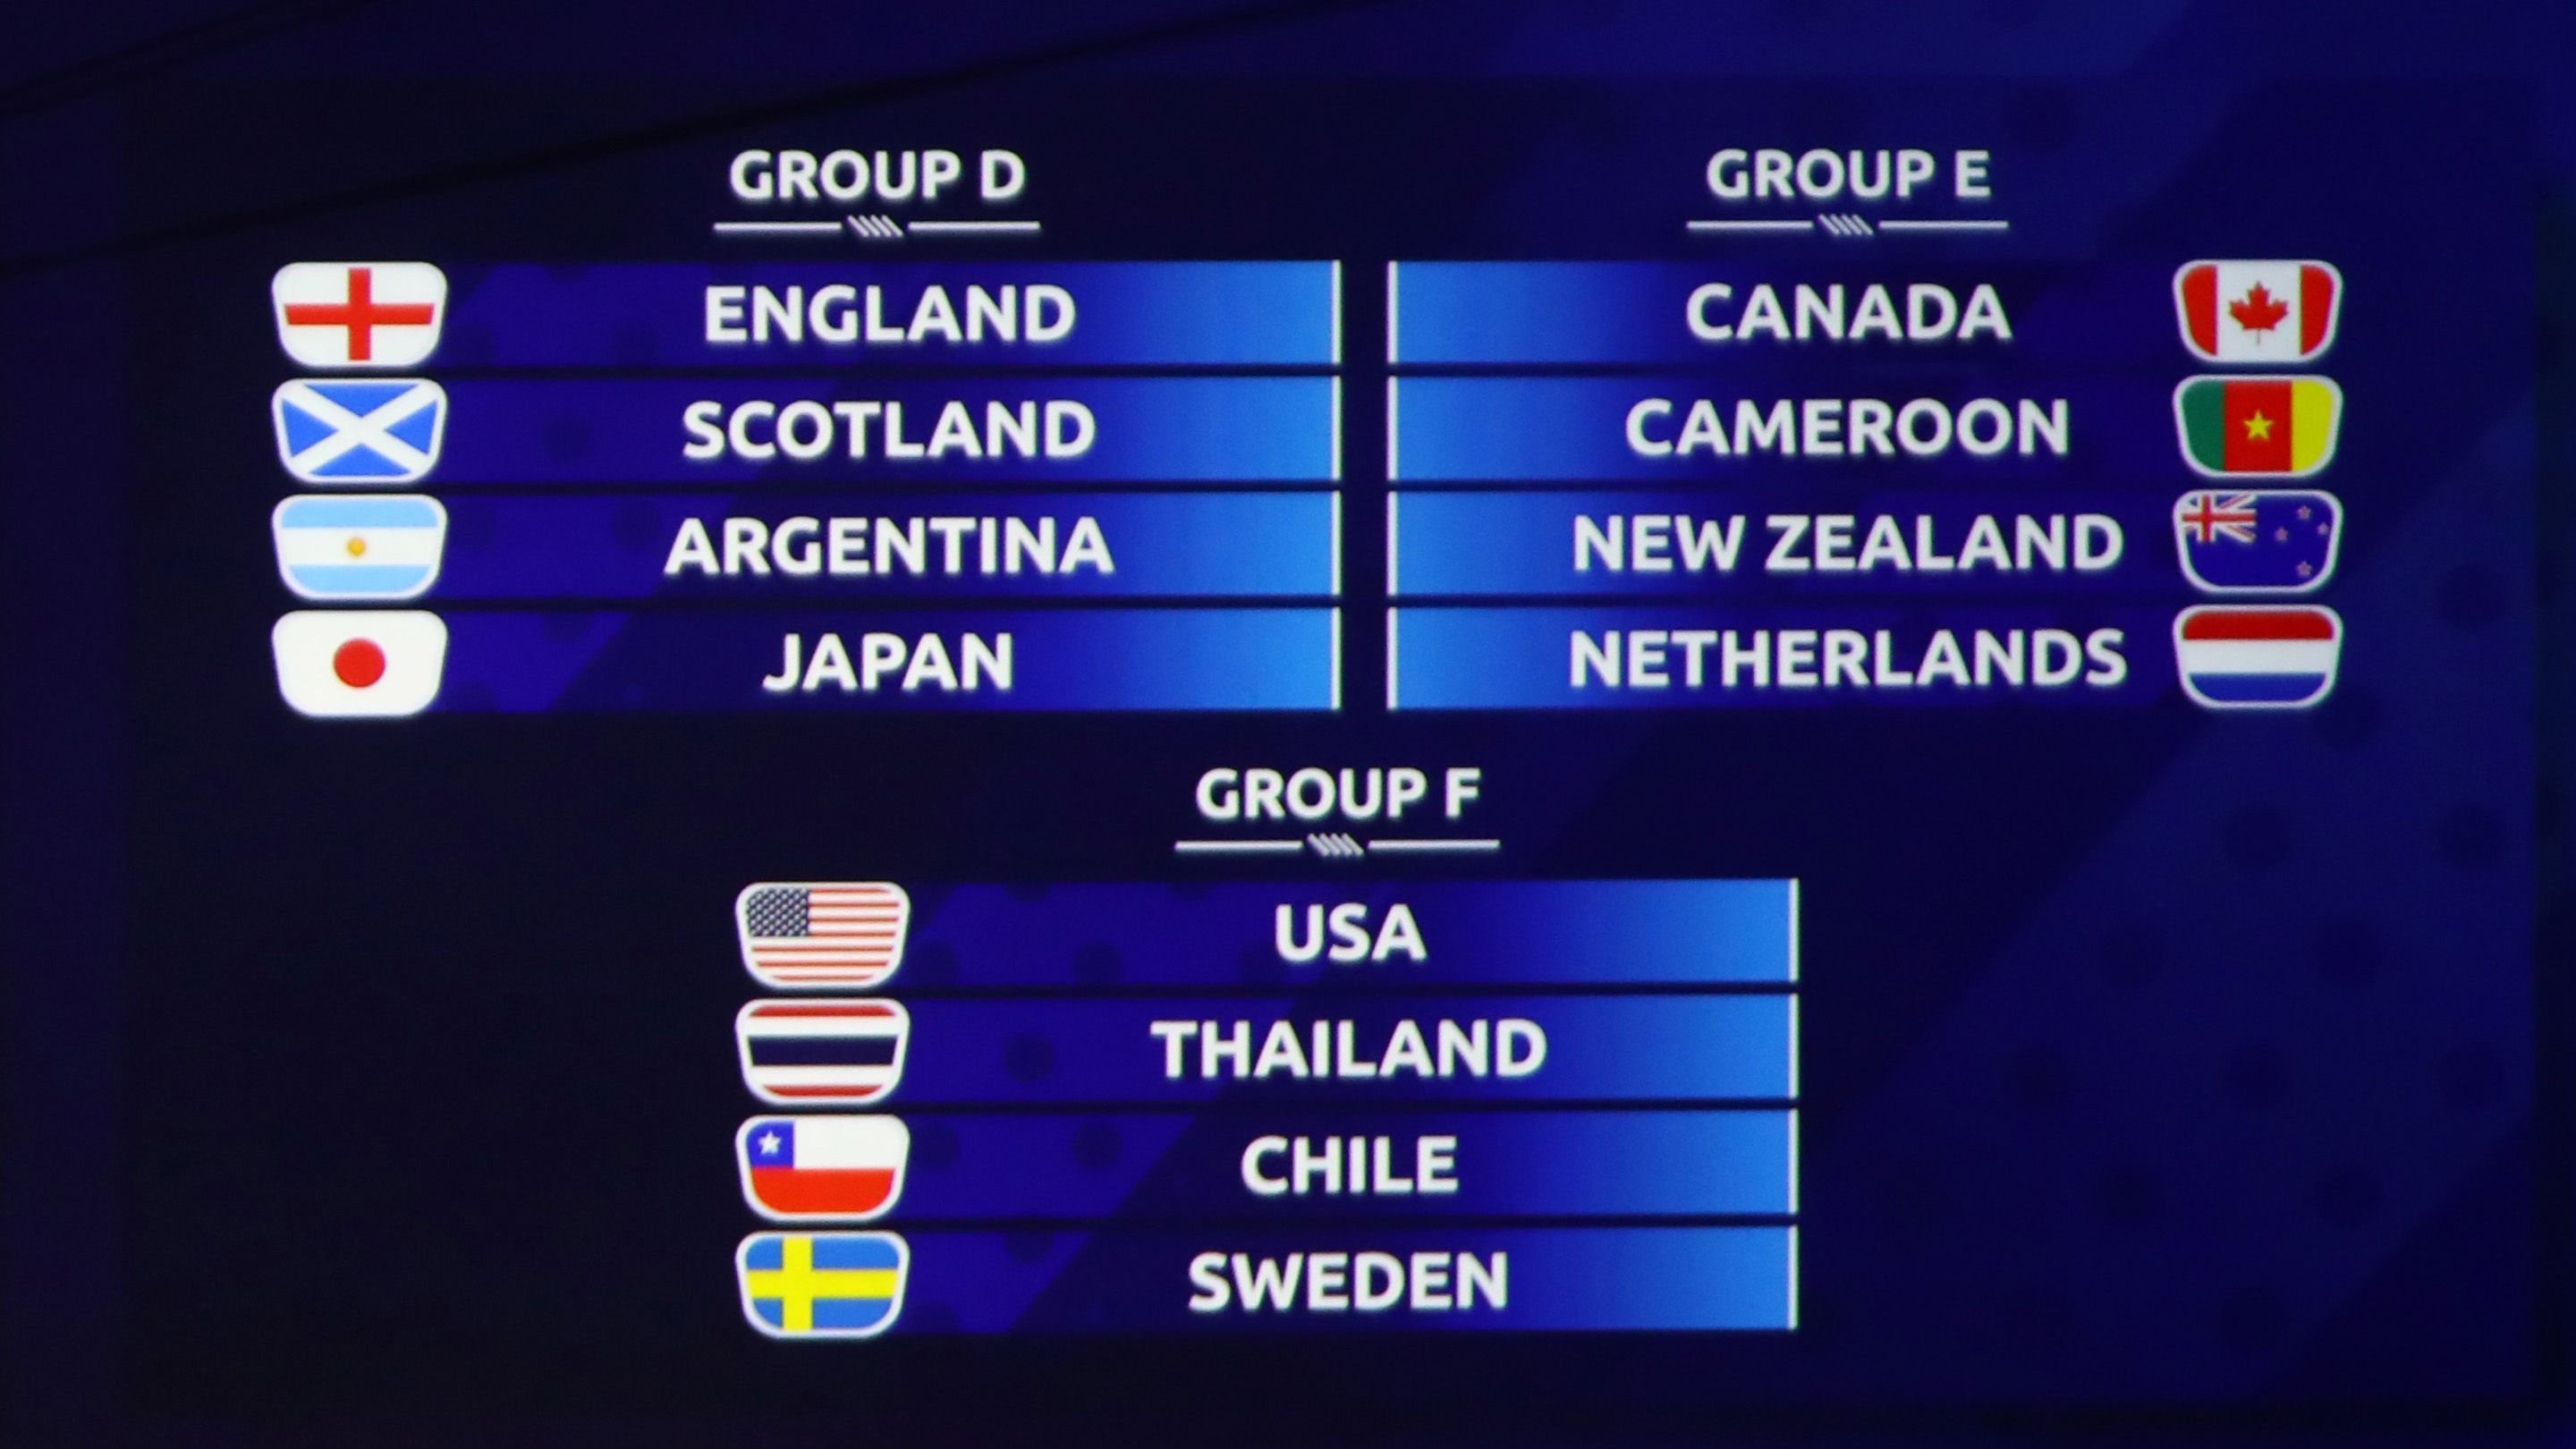 
                <strong>Wie sieht der Modus aus? </strong><br>
                Gespielt wird in sechs Gruppen mit je vier Mannschaften. Der Erste und Zweite einer Gruppe ziehen sicher ins Achtelfinale ein, dazu gesellen sich die vier besten Gruppendritten. Nach der Vorrunde wird im K.o.-System gespielt. Deutschland würde als Gruppenerster gegen den besten Drittplatzierten aus den Gruppen A, C oder D spielen. Als Gruppenzweiter würde das DFB-Team den Ersten der Gruppe F erwischen – also die USA, Thailand, Chile oder Schweden.
              